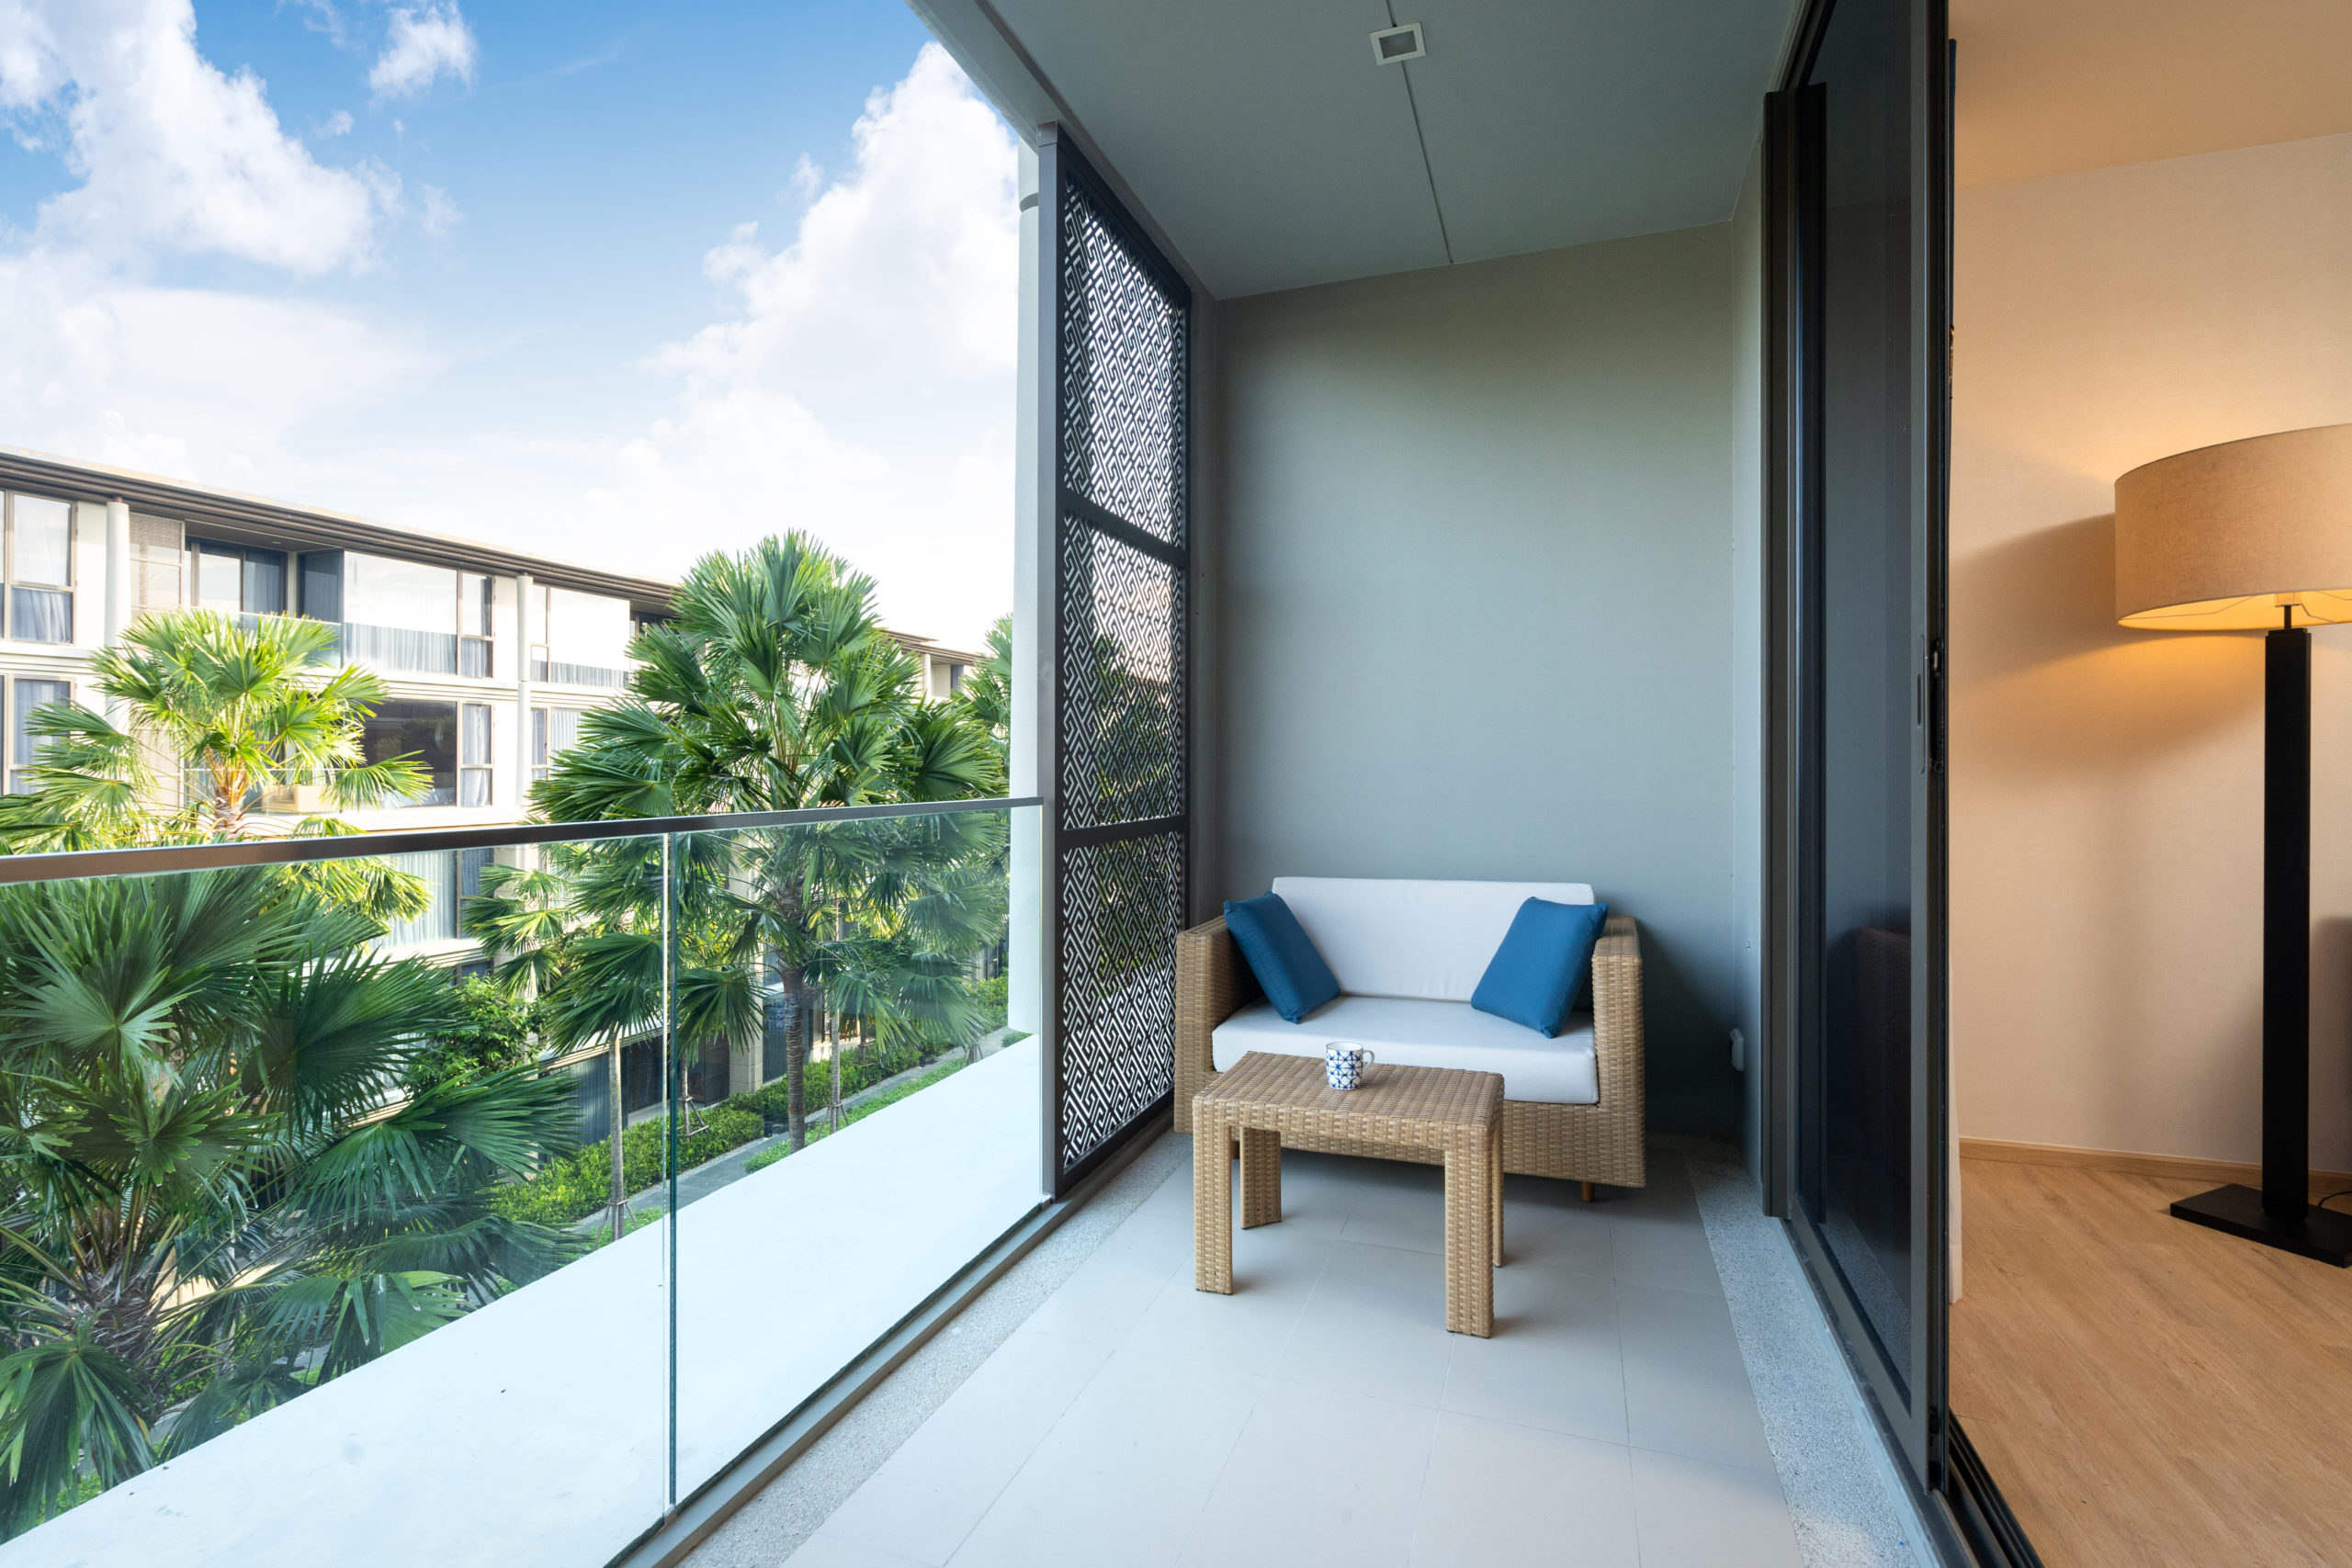 Uno strato impermeabile - la pavimentazione perfetta per i balconi